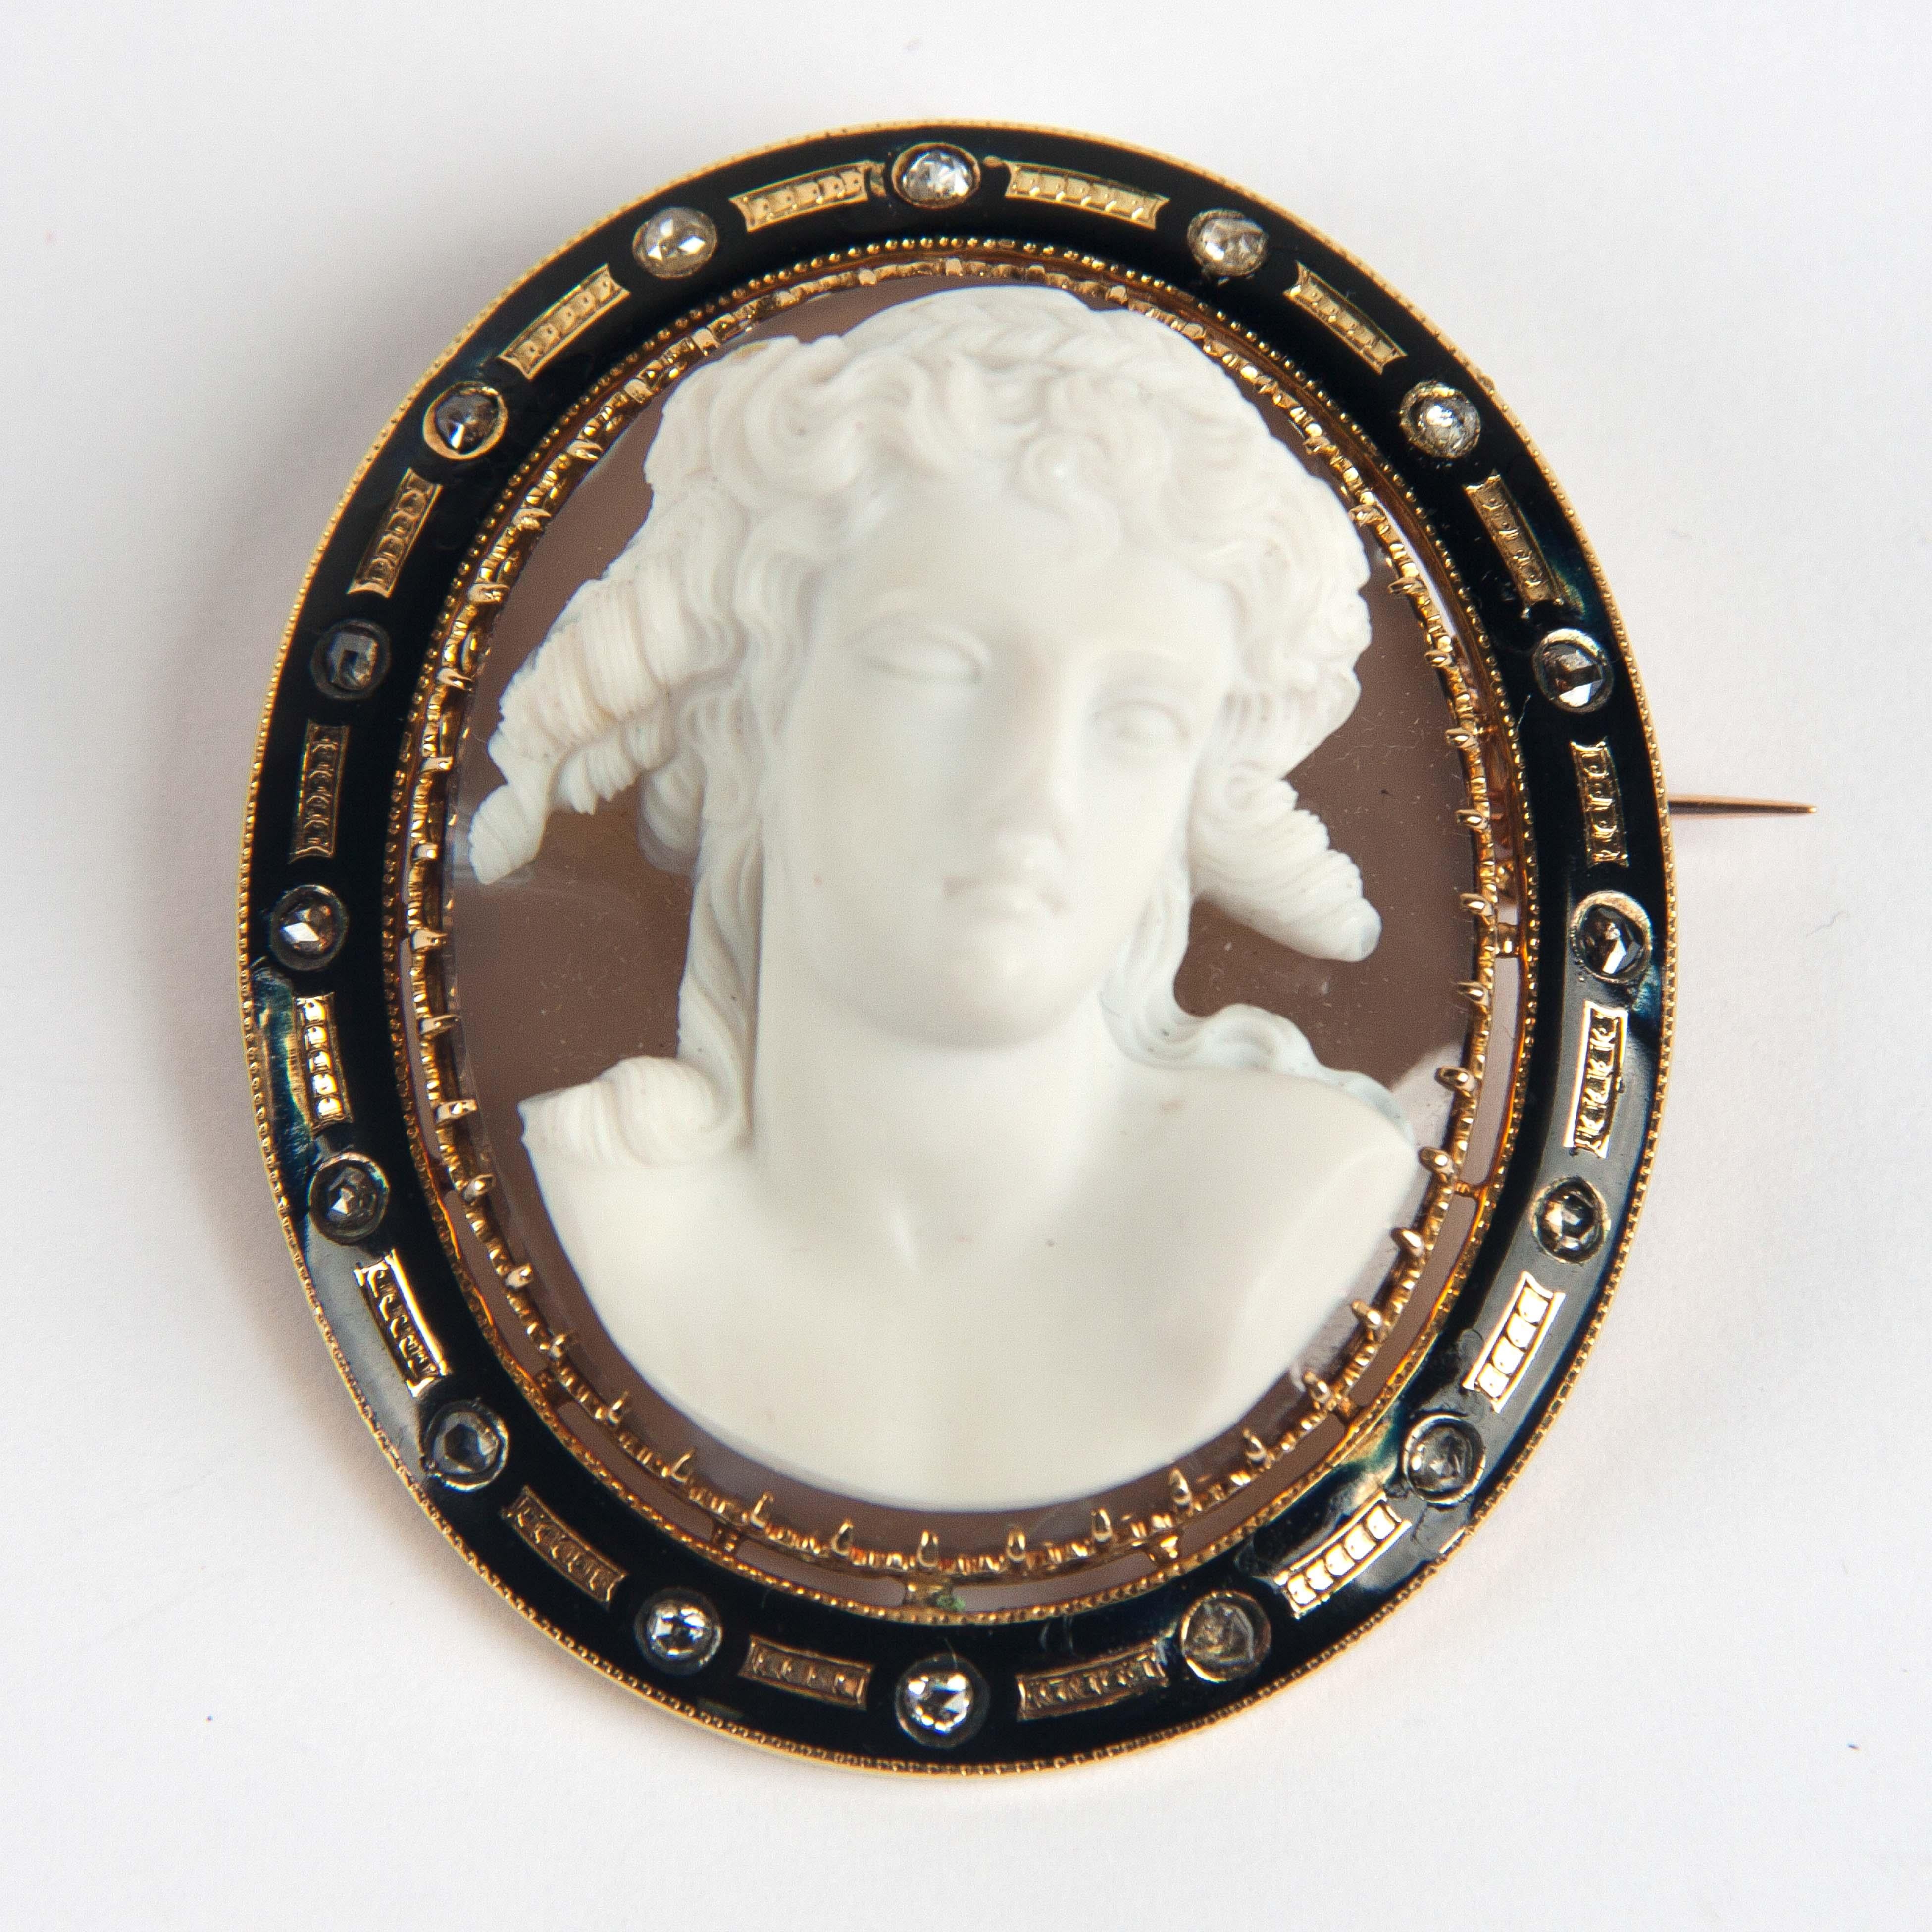 Bijou en or du 19ème siècle, dans une fine tête sculptée en porcelaine de Sèvres sur une plaque d'agate.
Le cadre est en email de Limoges avec des diamants.
 